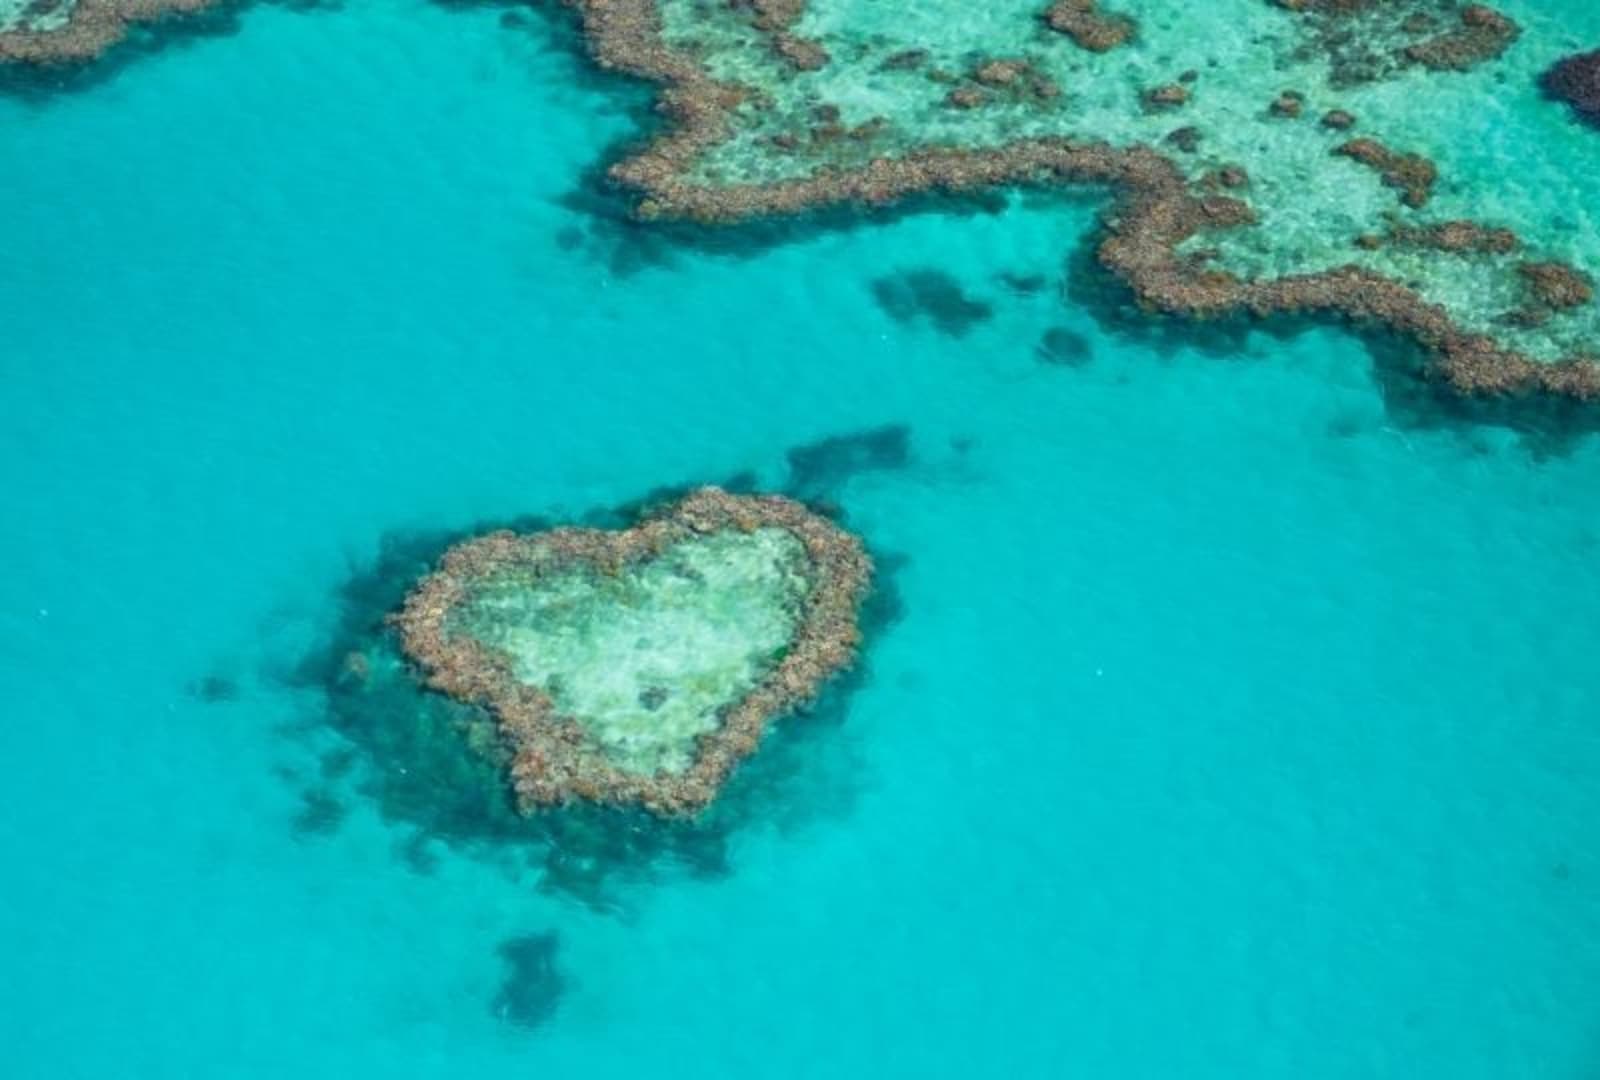 Hamilton Island Heart Shaped Reef Formation